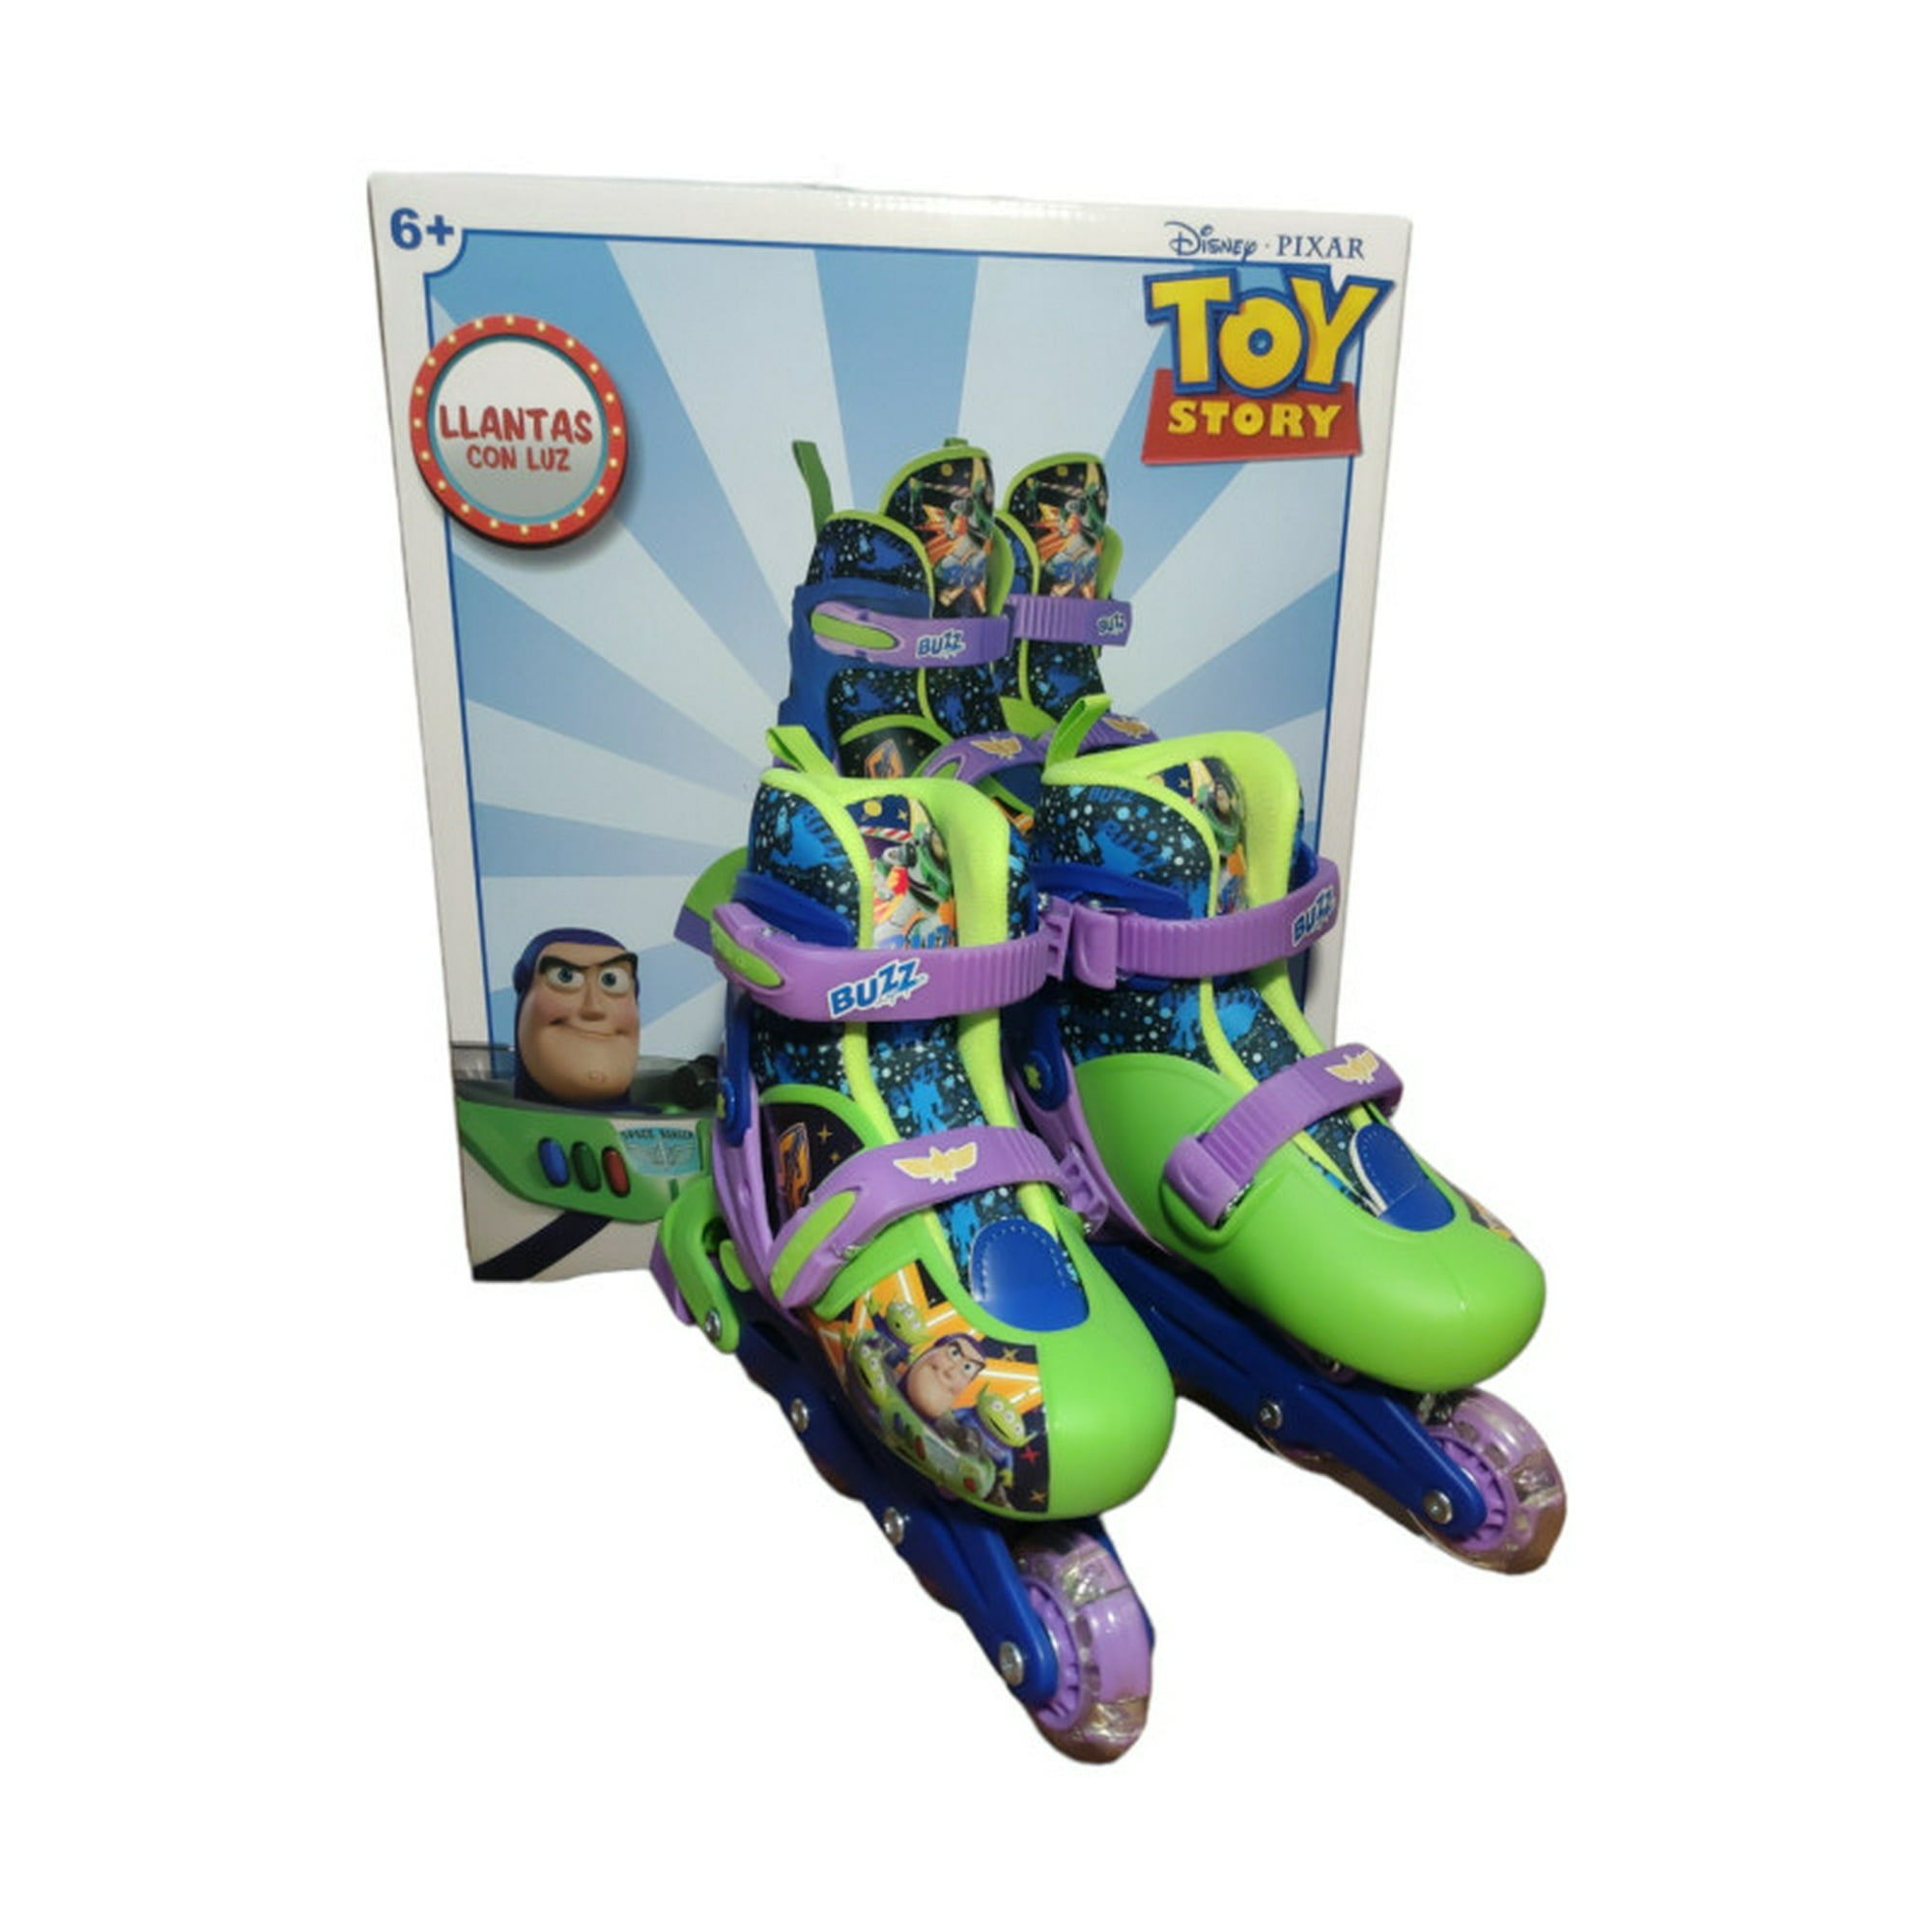 Patines en Linea The Baby Shop linea, ajustables, acolchados y Toy Story  Buzz Azul Lila